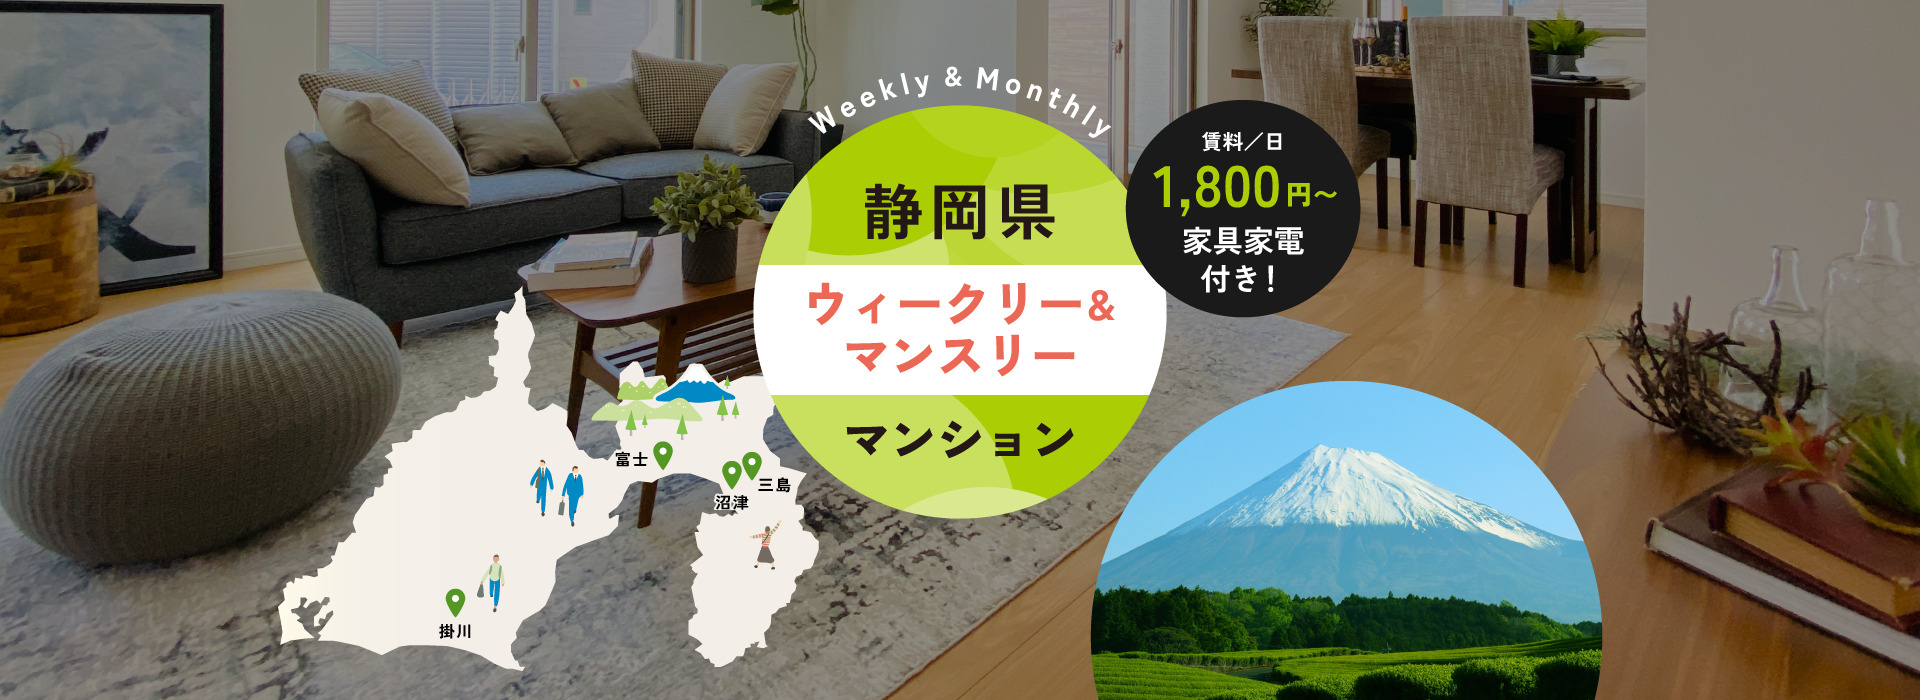 富士市・沼津市・三島市を中心に静岡県東部でマンスリーマンション・ウィークリーマンションを運用しています。法人様の出張や研修、旅行に便利な家具家電付き賃貸